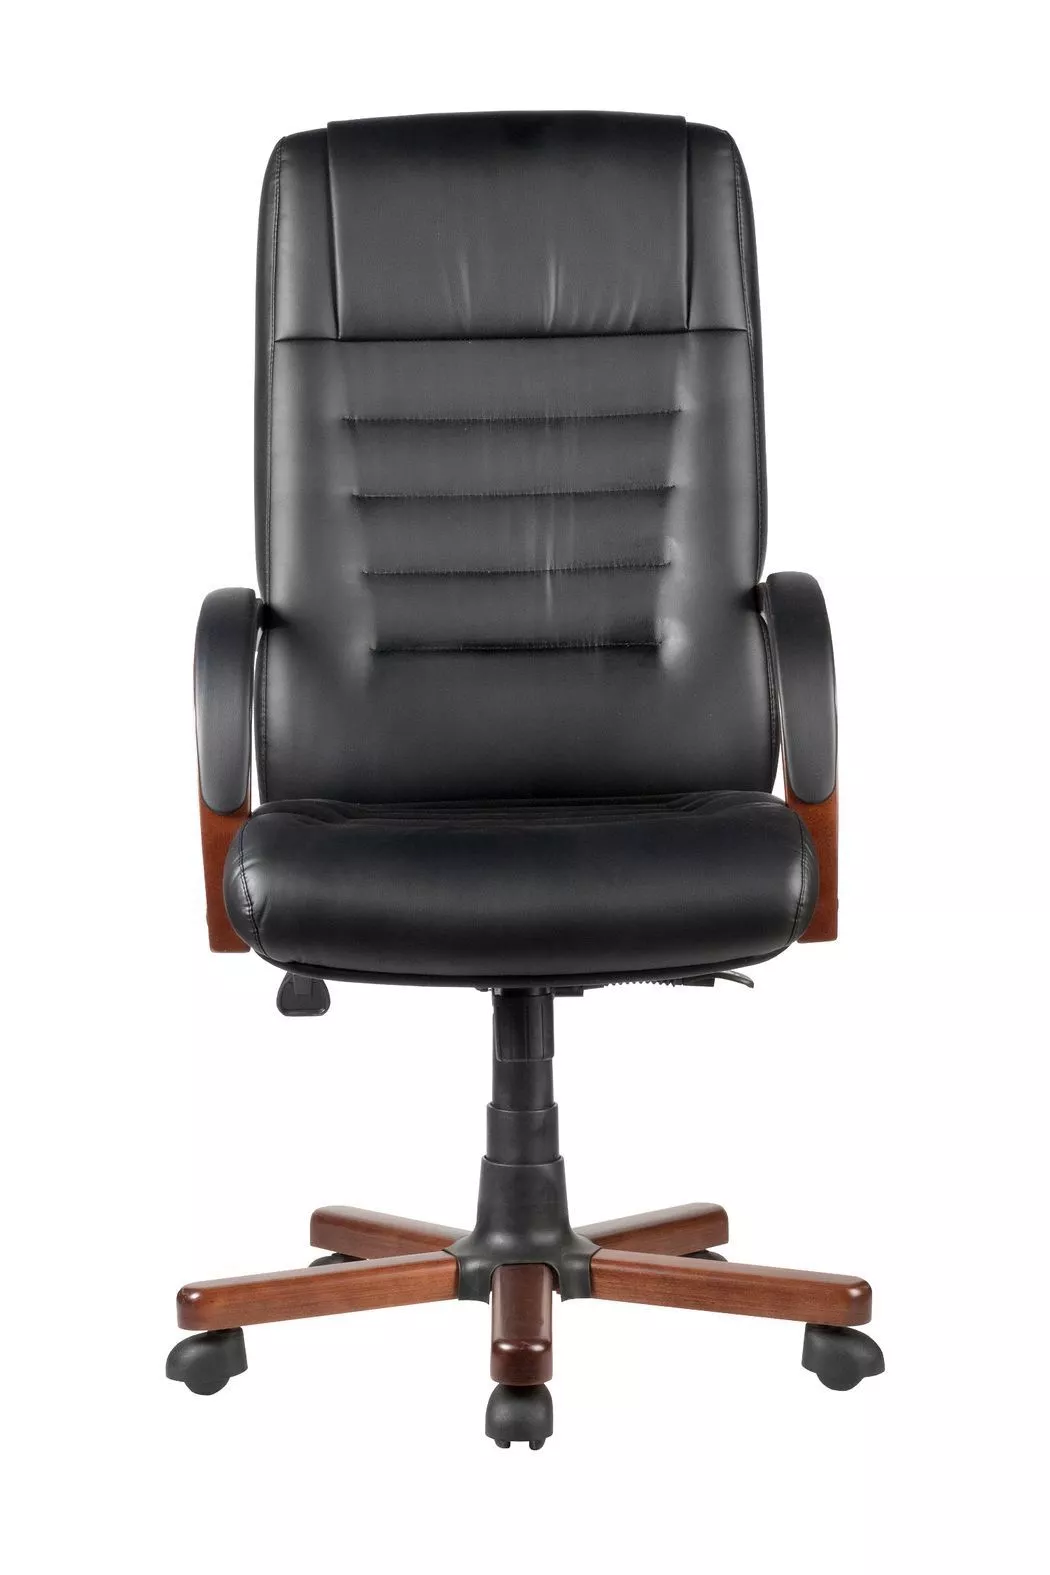 Кресло руководителя Riva Chair WOOD M 155 A черный